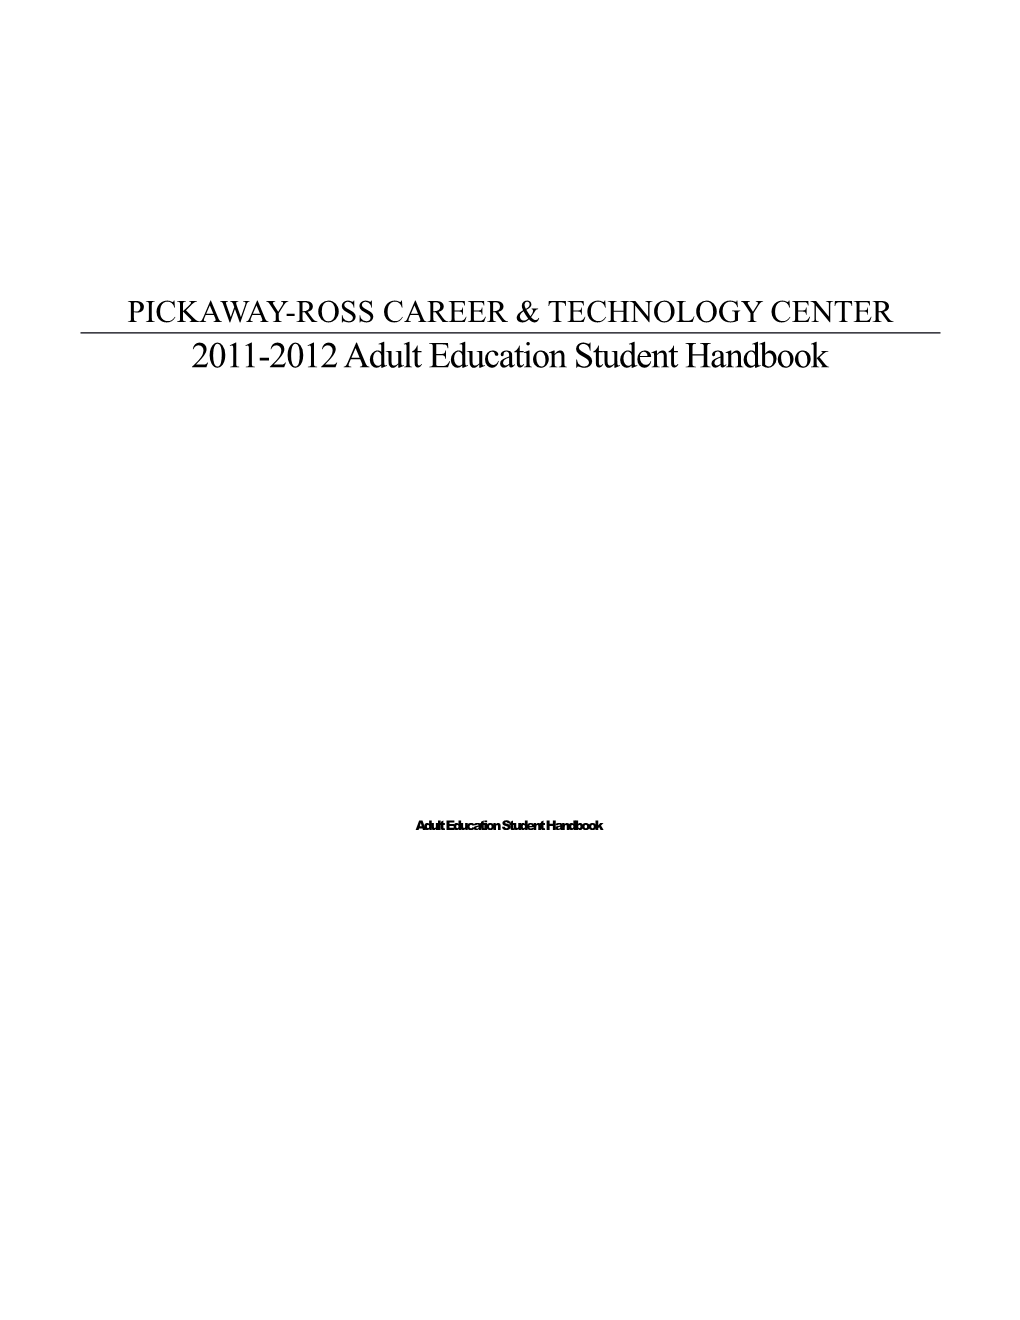 2011-2012 Adult Education Student Handbook